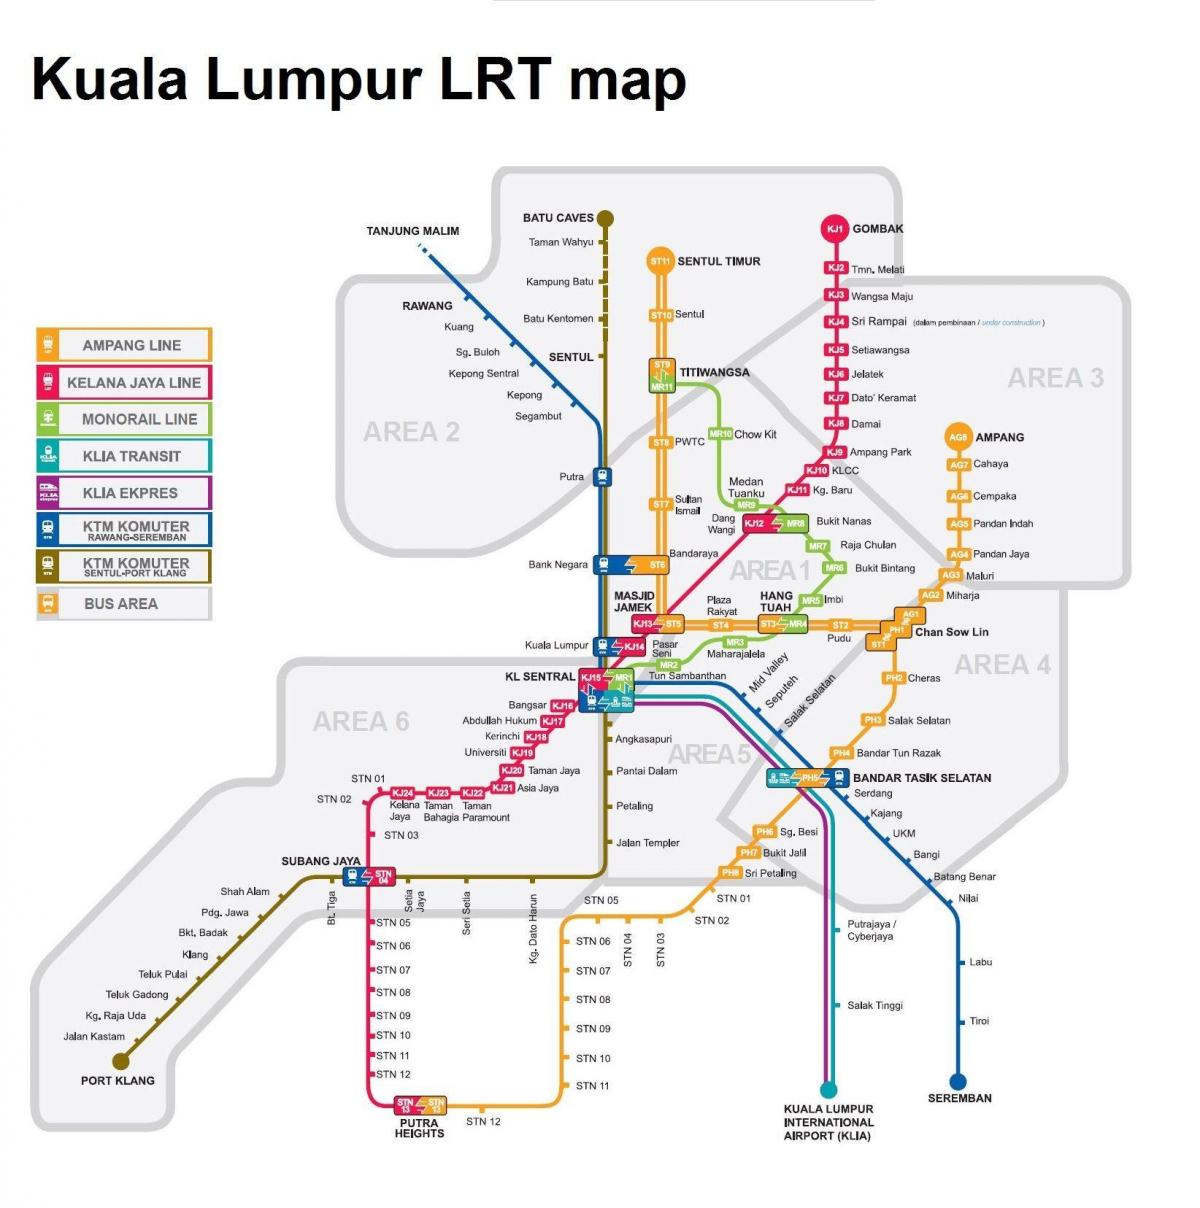 lrt map malaysia 2016